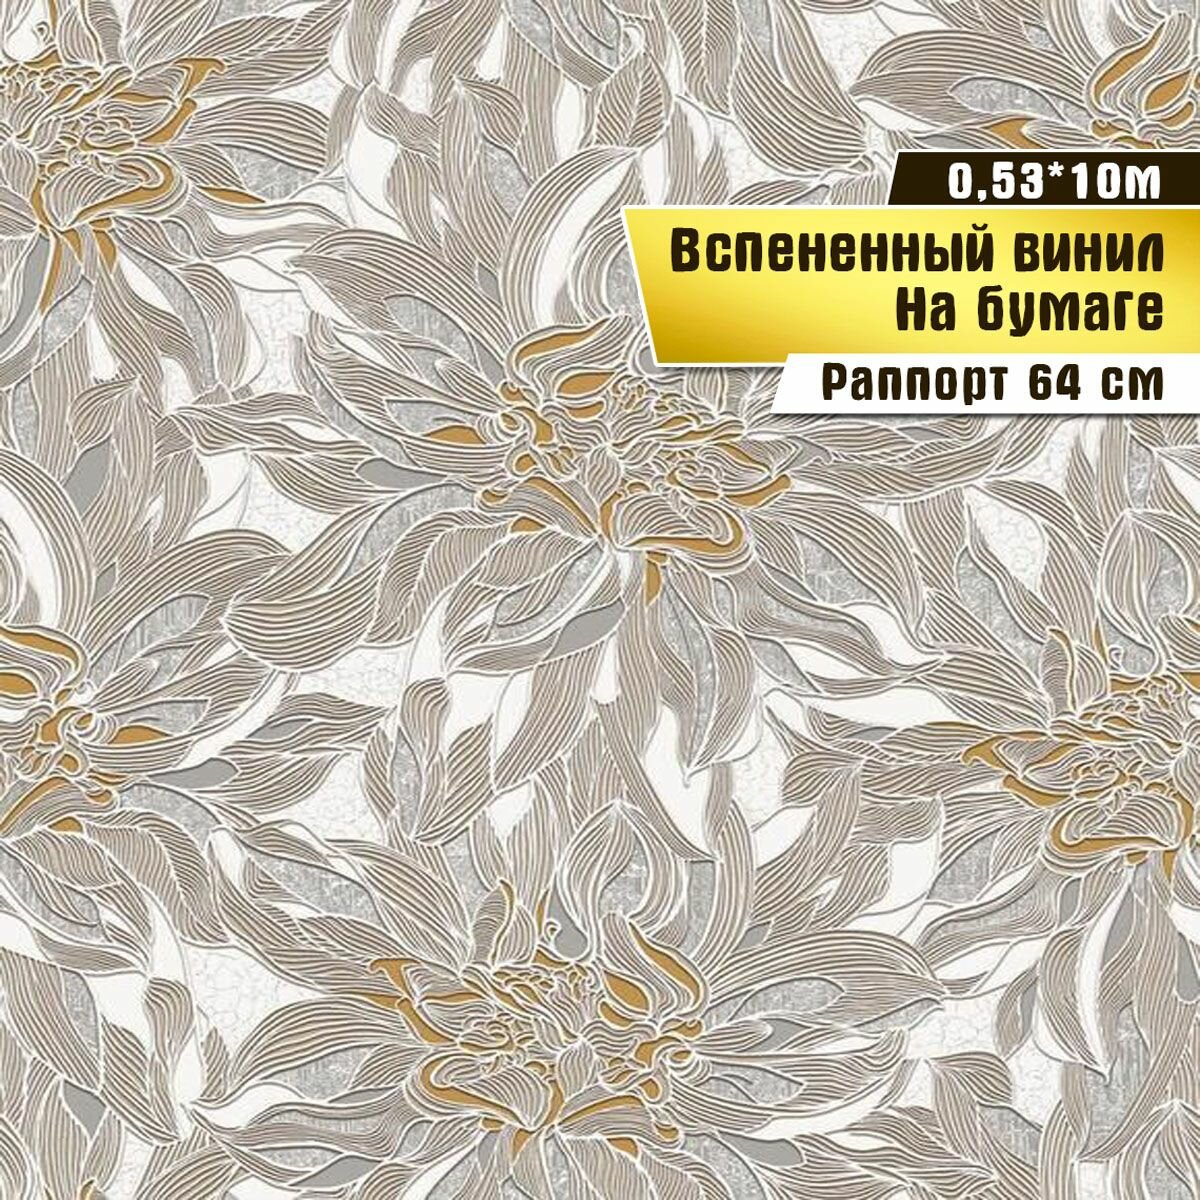 Обои вспененный винил на бумаге, Саратовская обойная фабрика, "Солярис" арт.094-05, 0,53*10м.